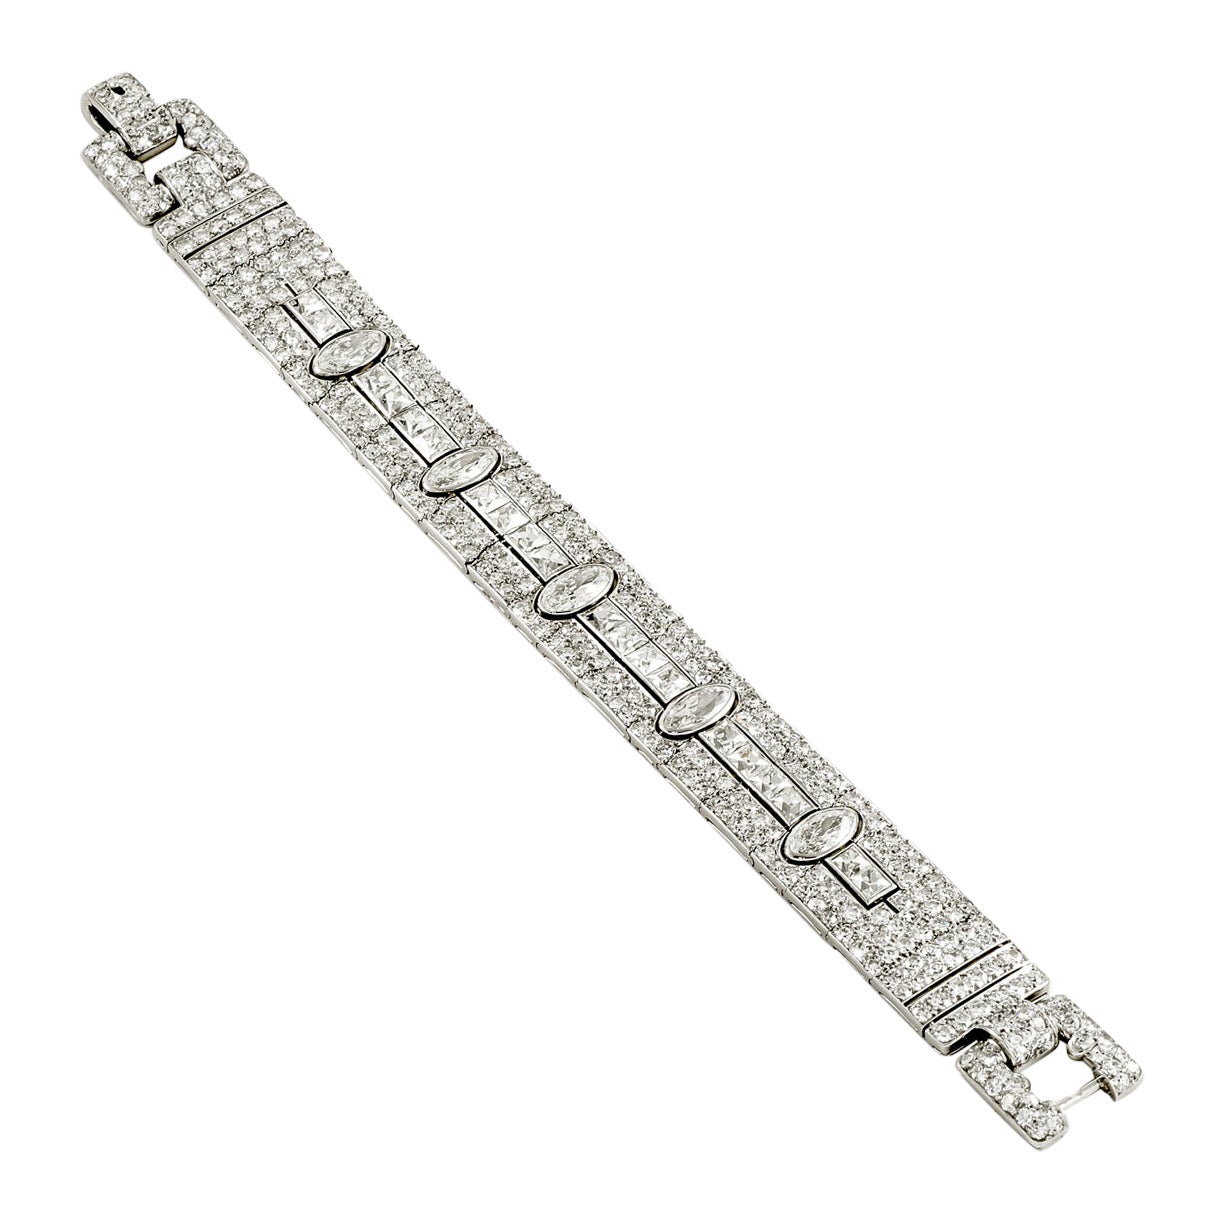 Rare Art Deco Diamond and Platinum Bracelet by Marzo Joailliers, Paris For Sale